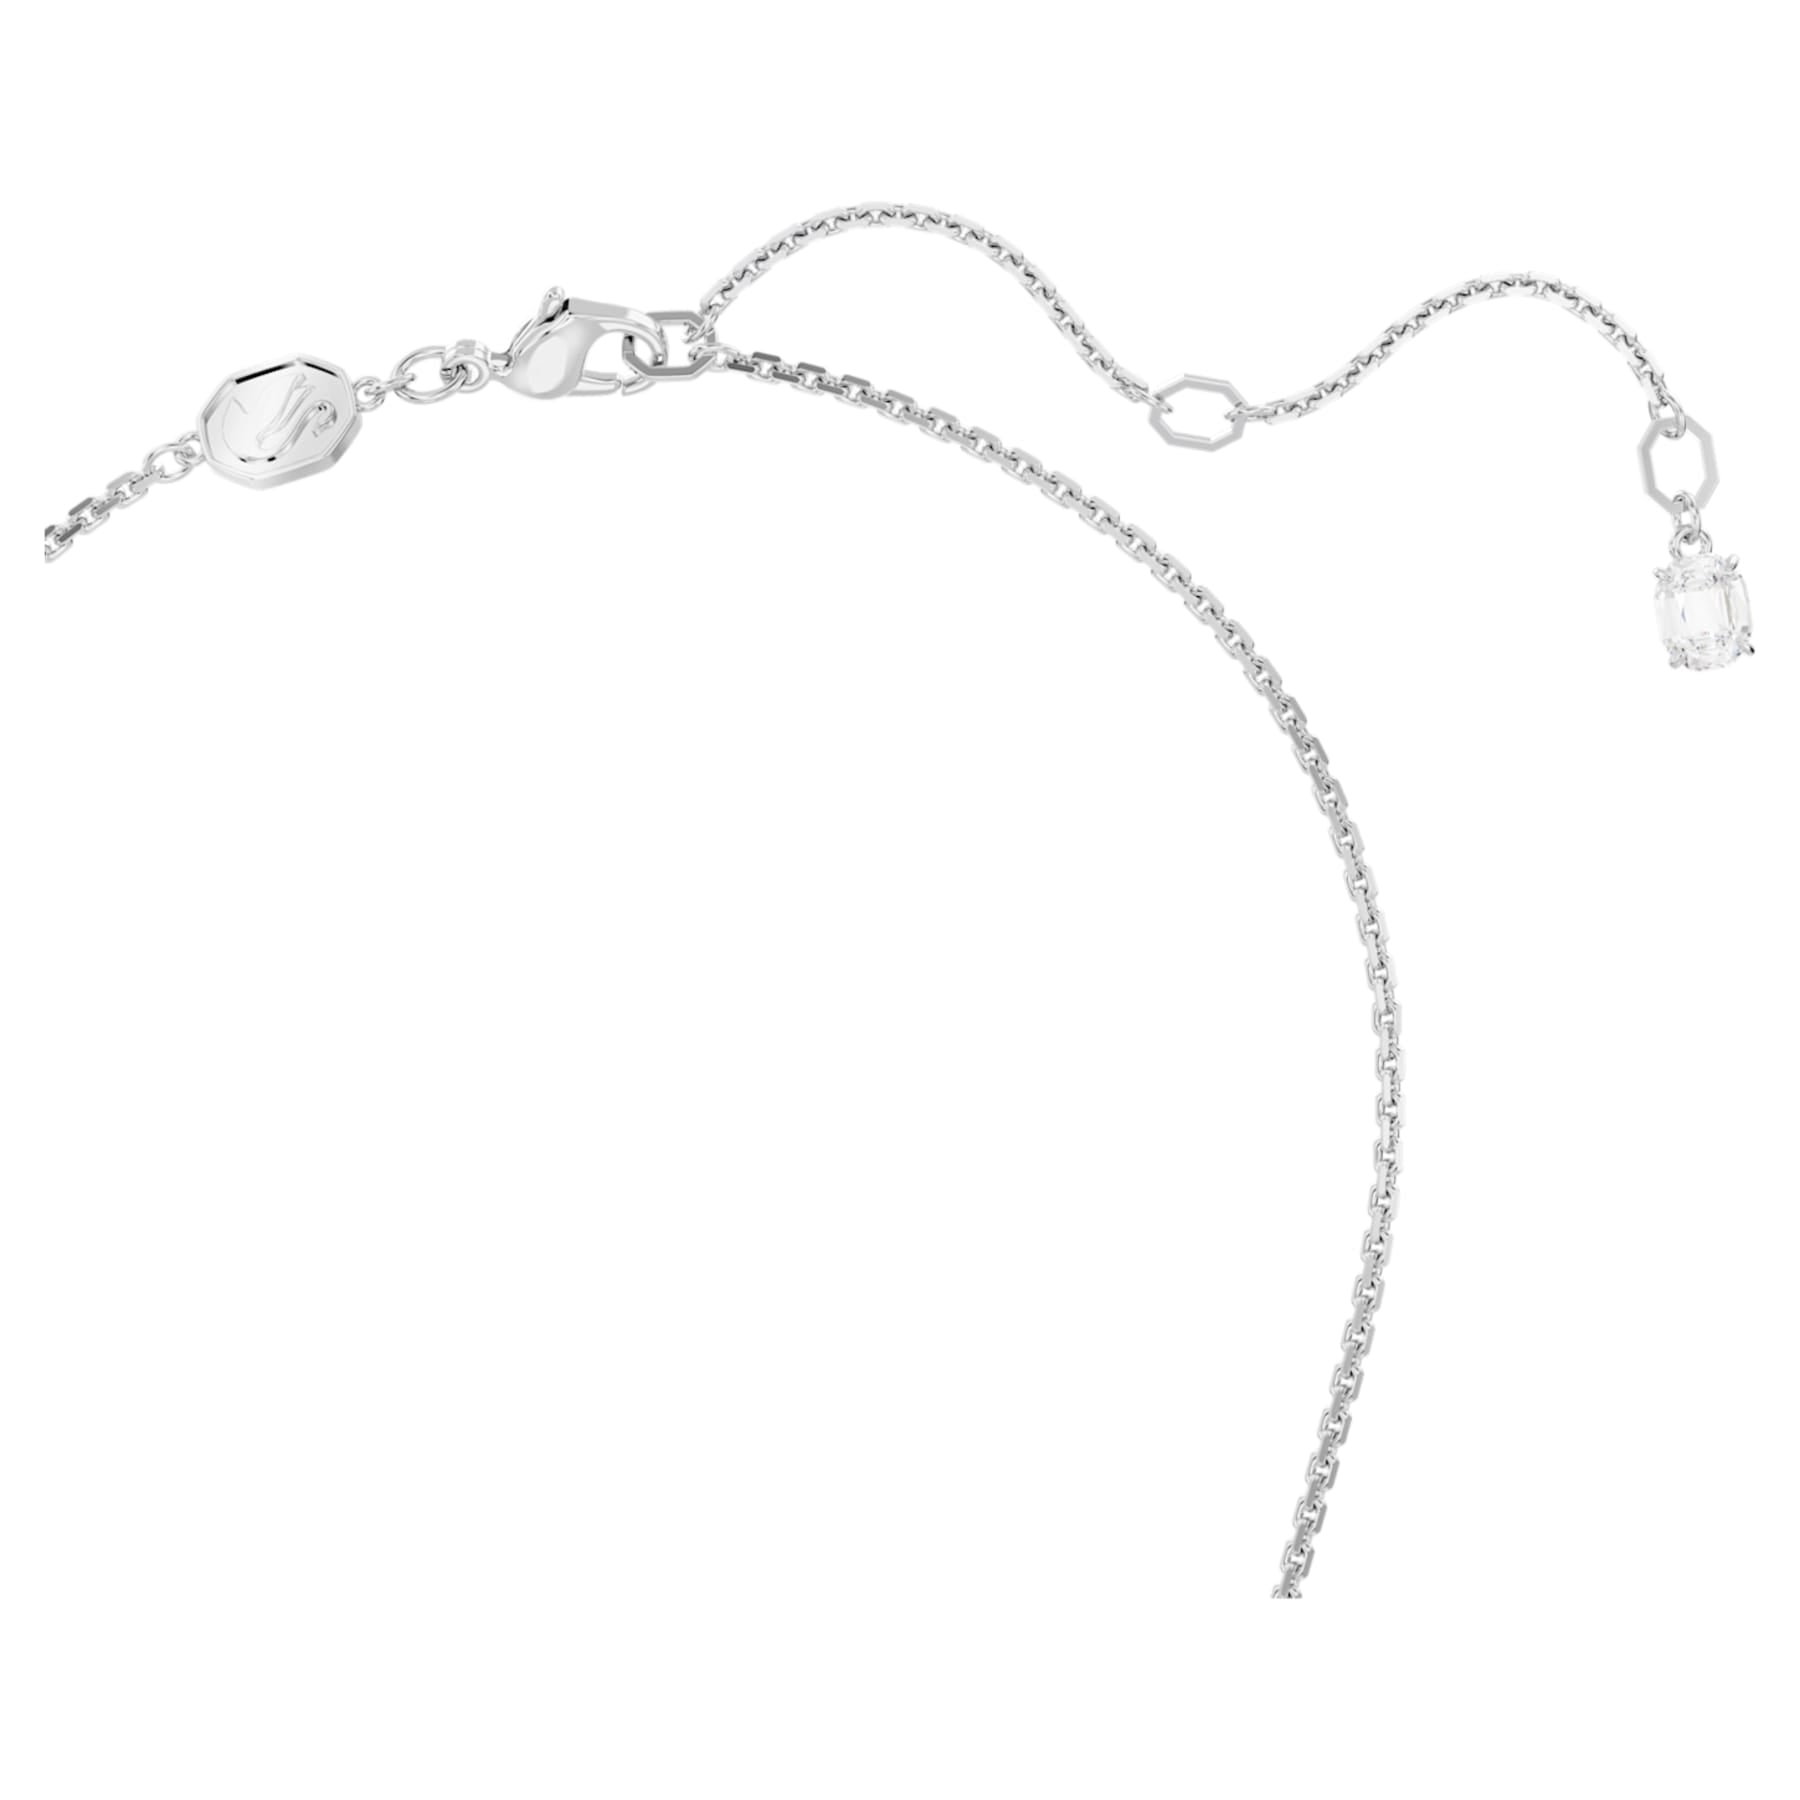 Mesmera - White Silver - Necklace - Swarovski